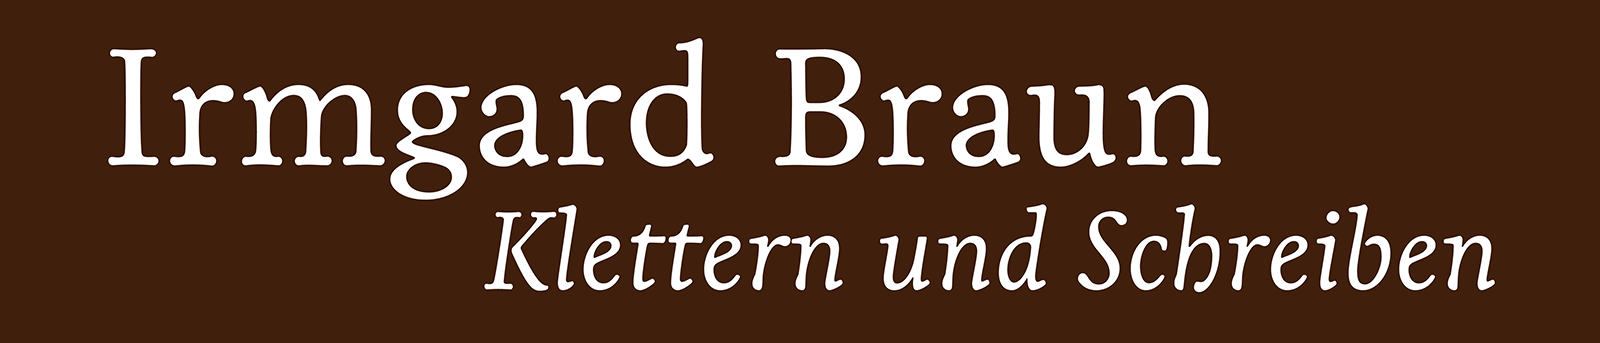 Irmgard Braun – Klettern und Schreiben / Logo